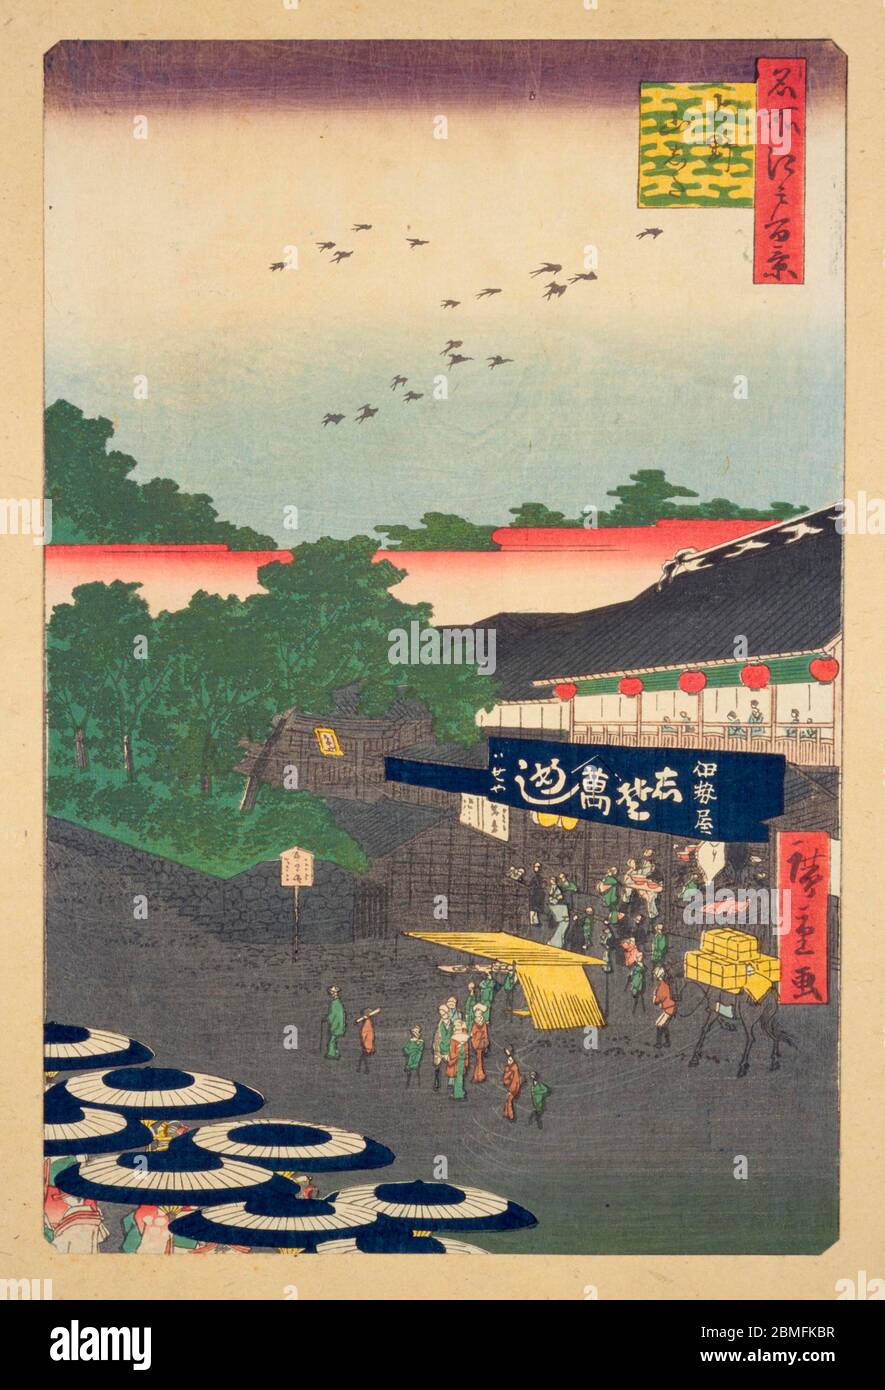 [ 1850 Giappone - Ristorante Giapponese ] - Donne con ombrelloni di fronte al ristorante Iseya e templi a Ueno, Edo (attuale Tokyo), 1858 (Ansei 5). Questa stampa in blocco di legno è l'immagine 12 in cento viste famose di Edo (名所江戸百景, Meisho Edo Hyakkei), una serie creata dall'artista ukiyoe Utagawa Hiroshige (歌川広重, 1797–1858). È una delle 42 scene primaverili della serie. Titolo: Ueno Yamashita (上野山した) stampa a blocchi di legno Ukiyoe vintage del XIX secolo. Foto Stock